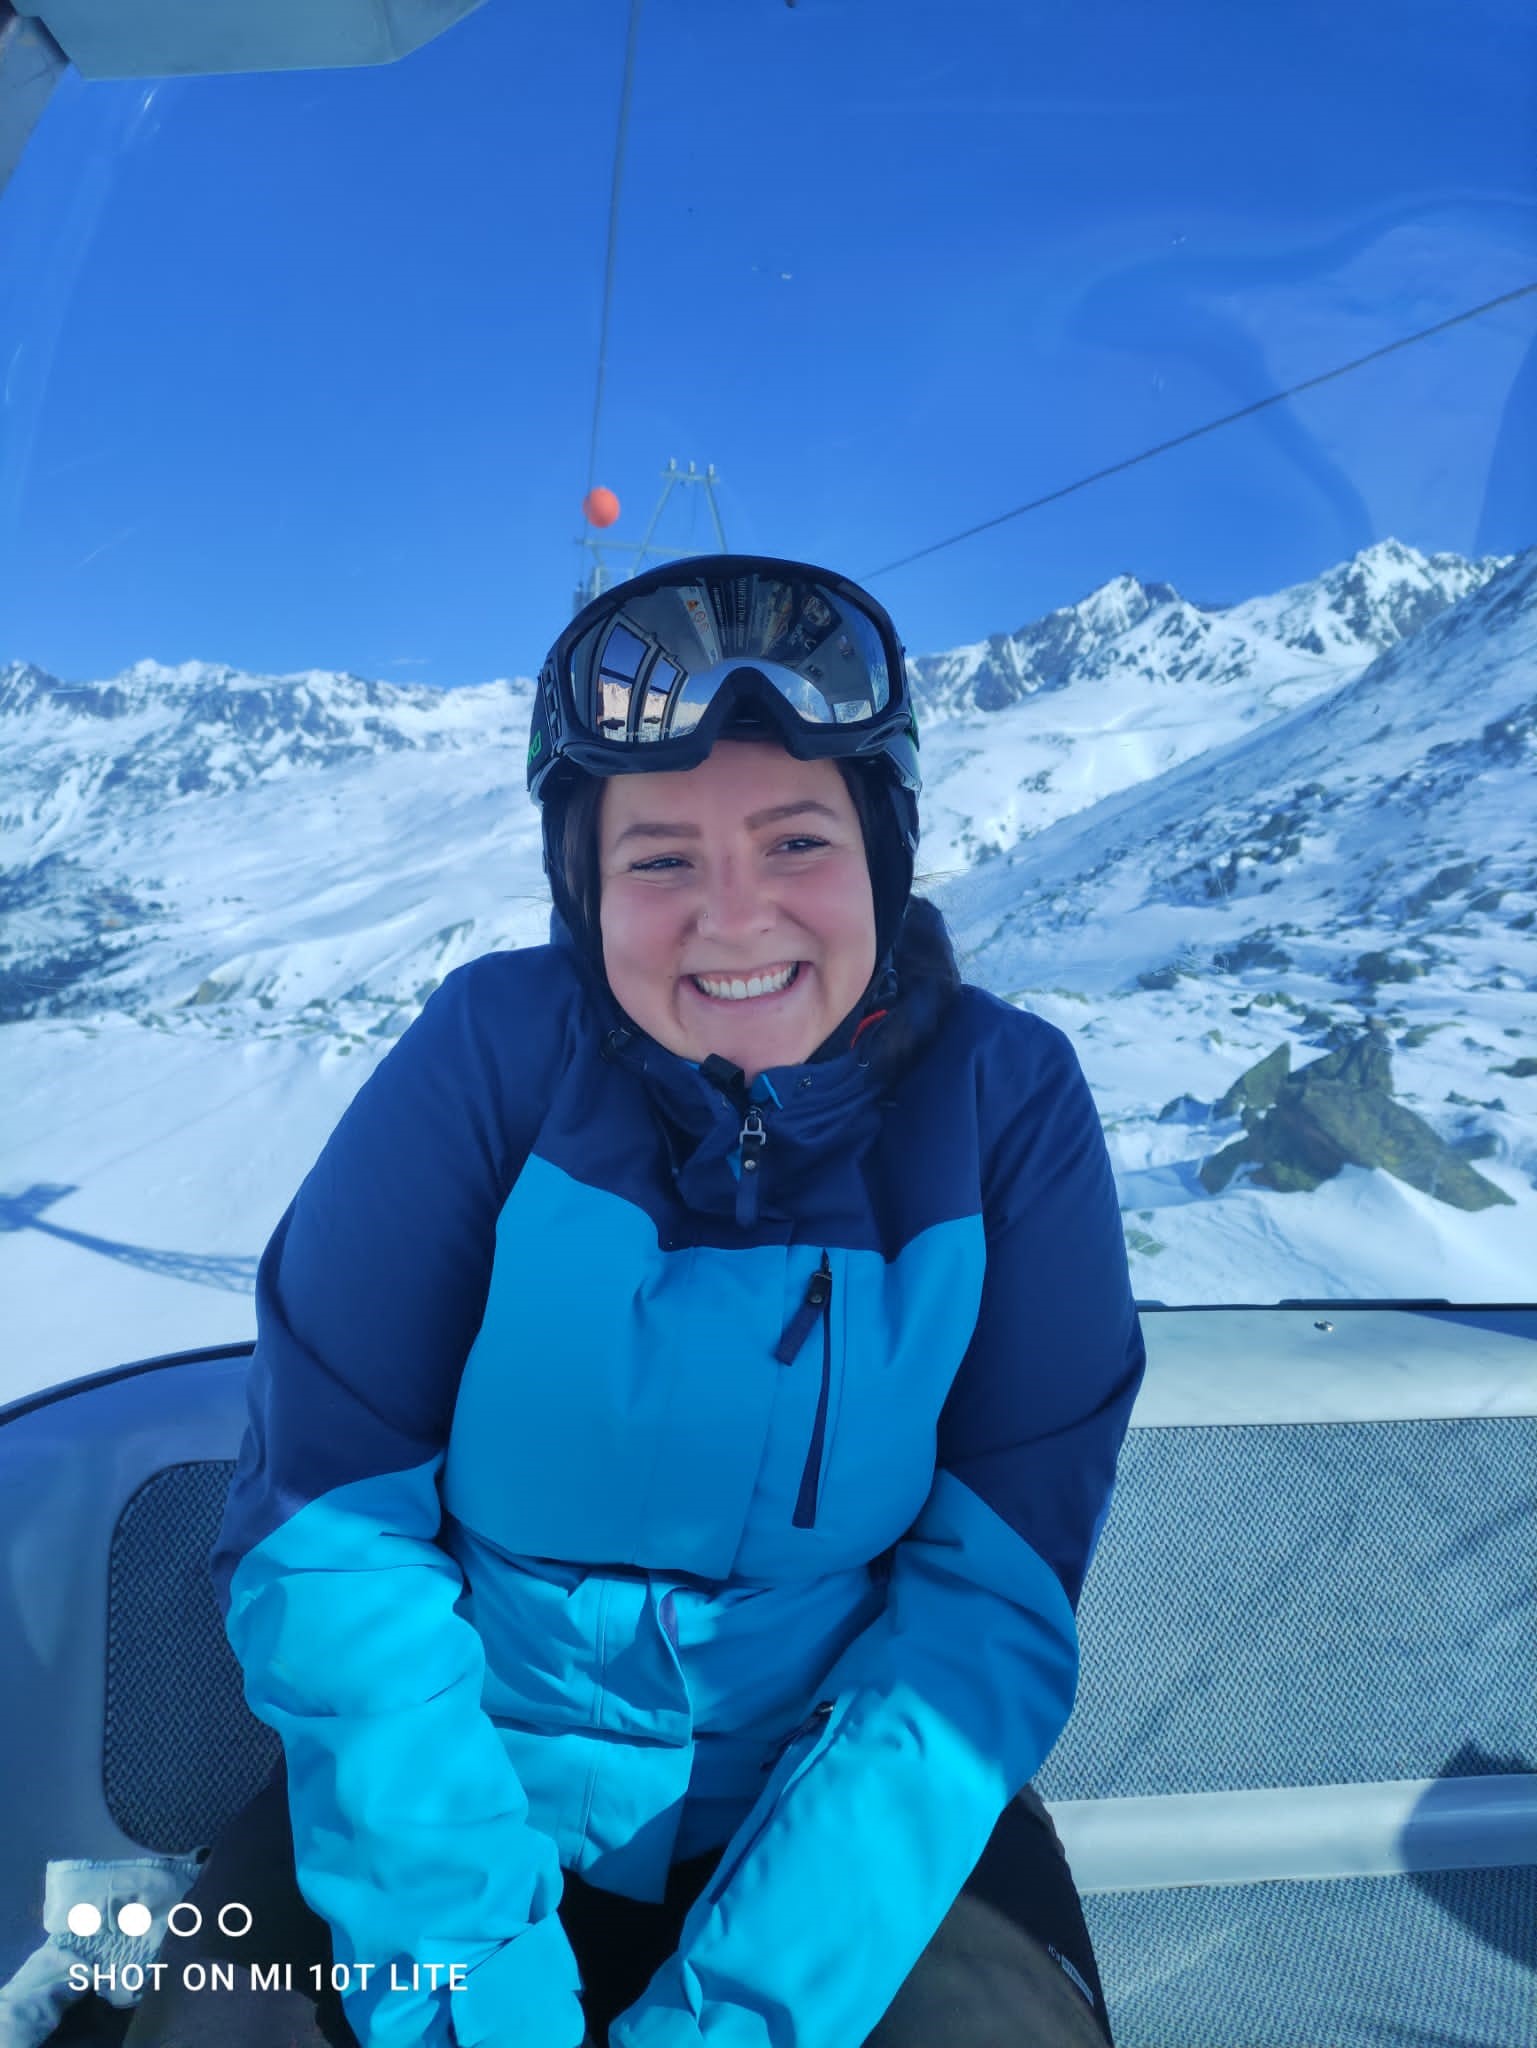 Chantal im Skianzug in der Gondel